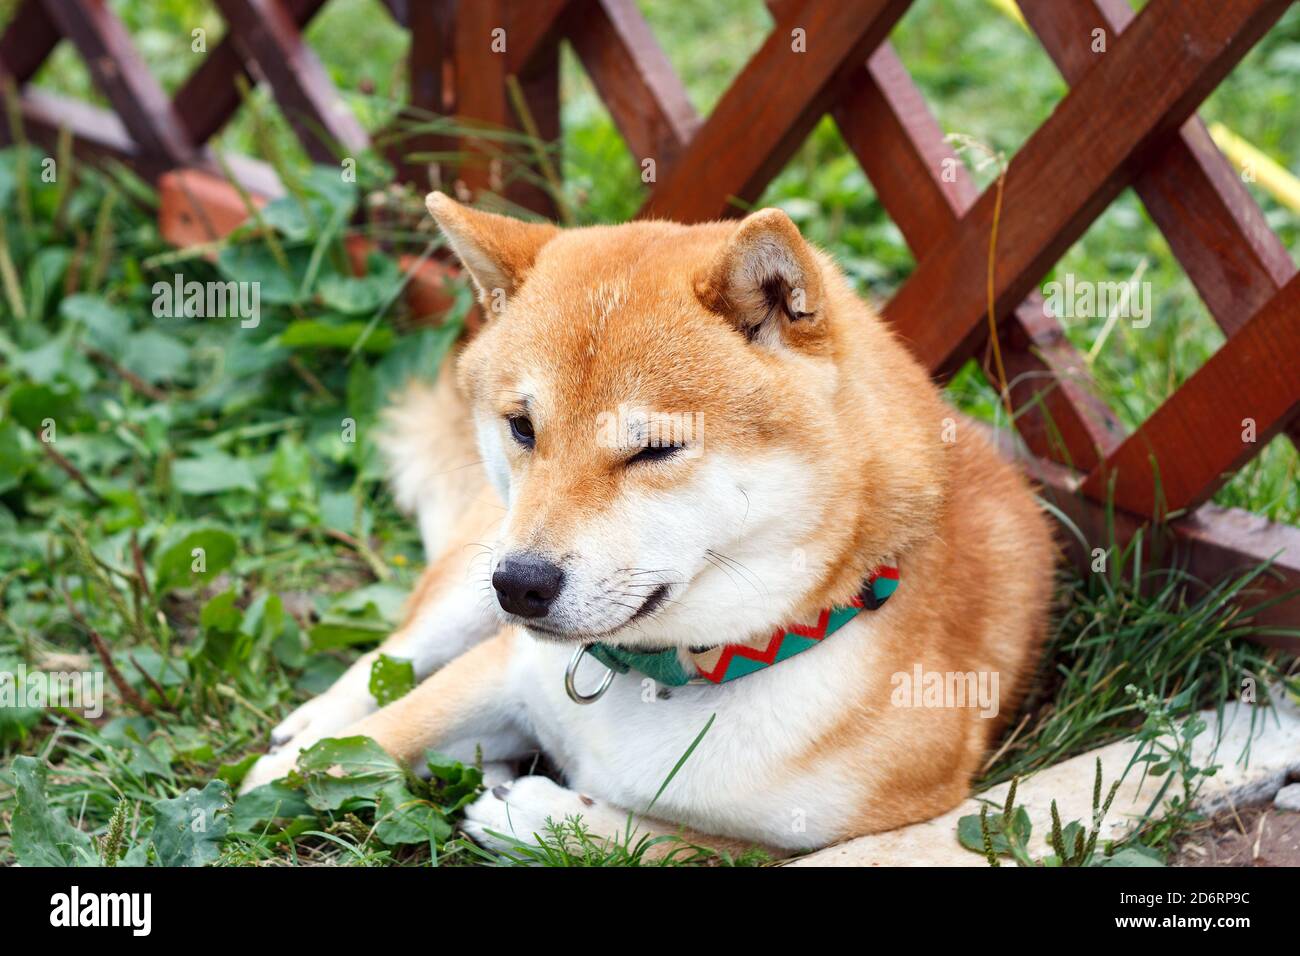 Cane giapponese di razza Shiba Inu sdraiato in una giornata estiva di sole. Il cane Shiba Ken giapponese di piccola taglia riposa sull'erba verde Foto Stock